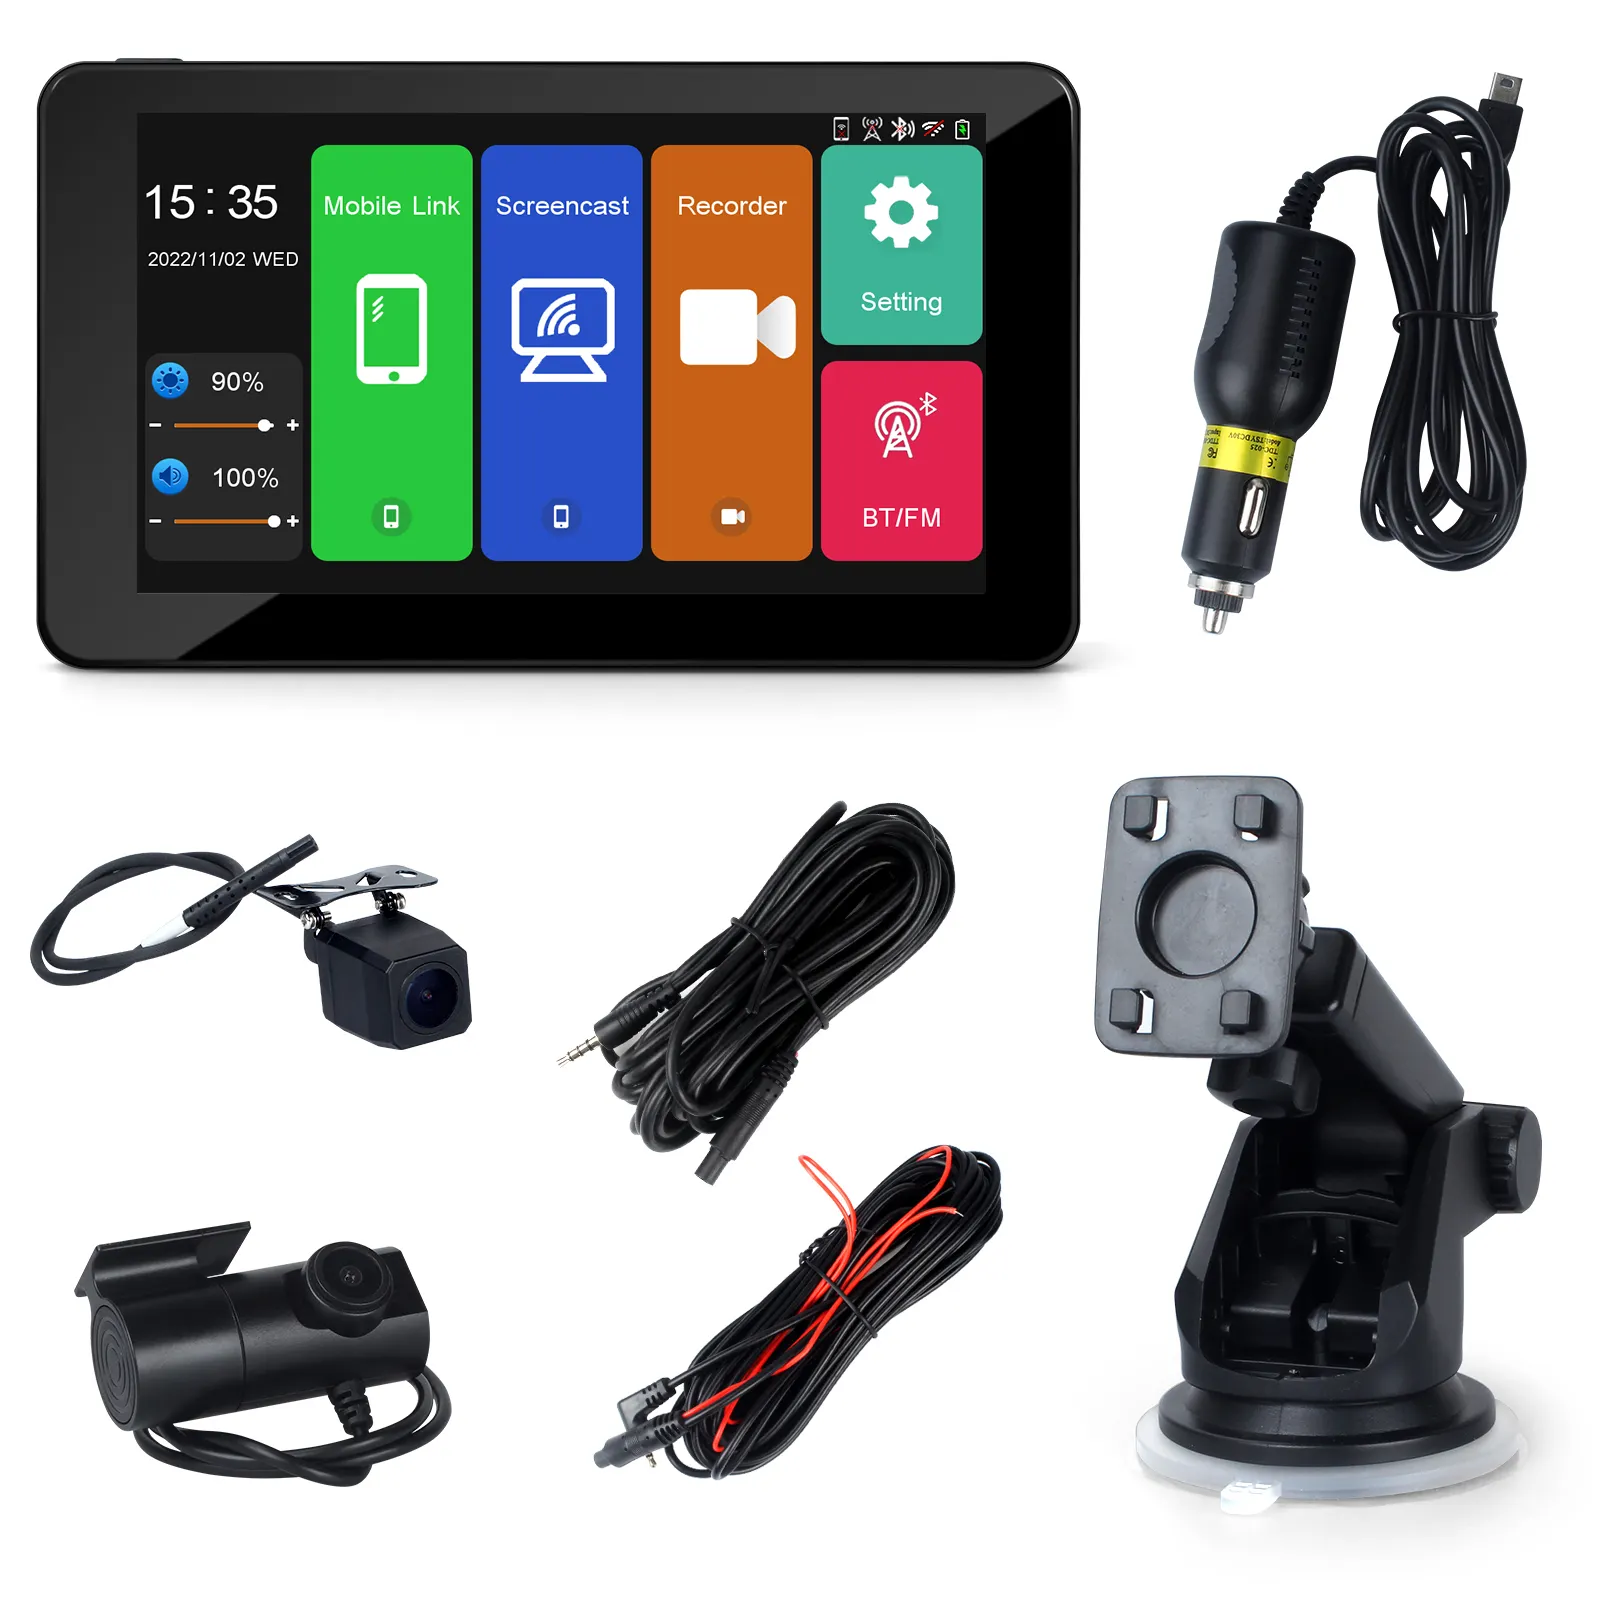 새로운 7 "HD 터치 스크린 휴대용 무선 BT Carplay 안드로이드 자동 전면 백미러 카메라 GPS 네비게이션 와이파이 FM 자동차 Dashcam